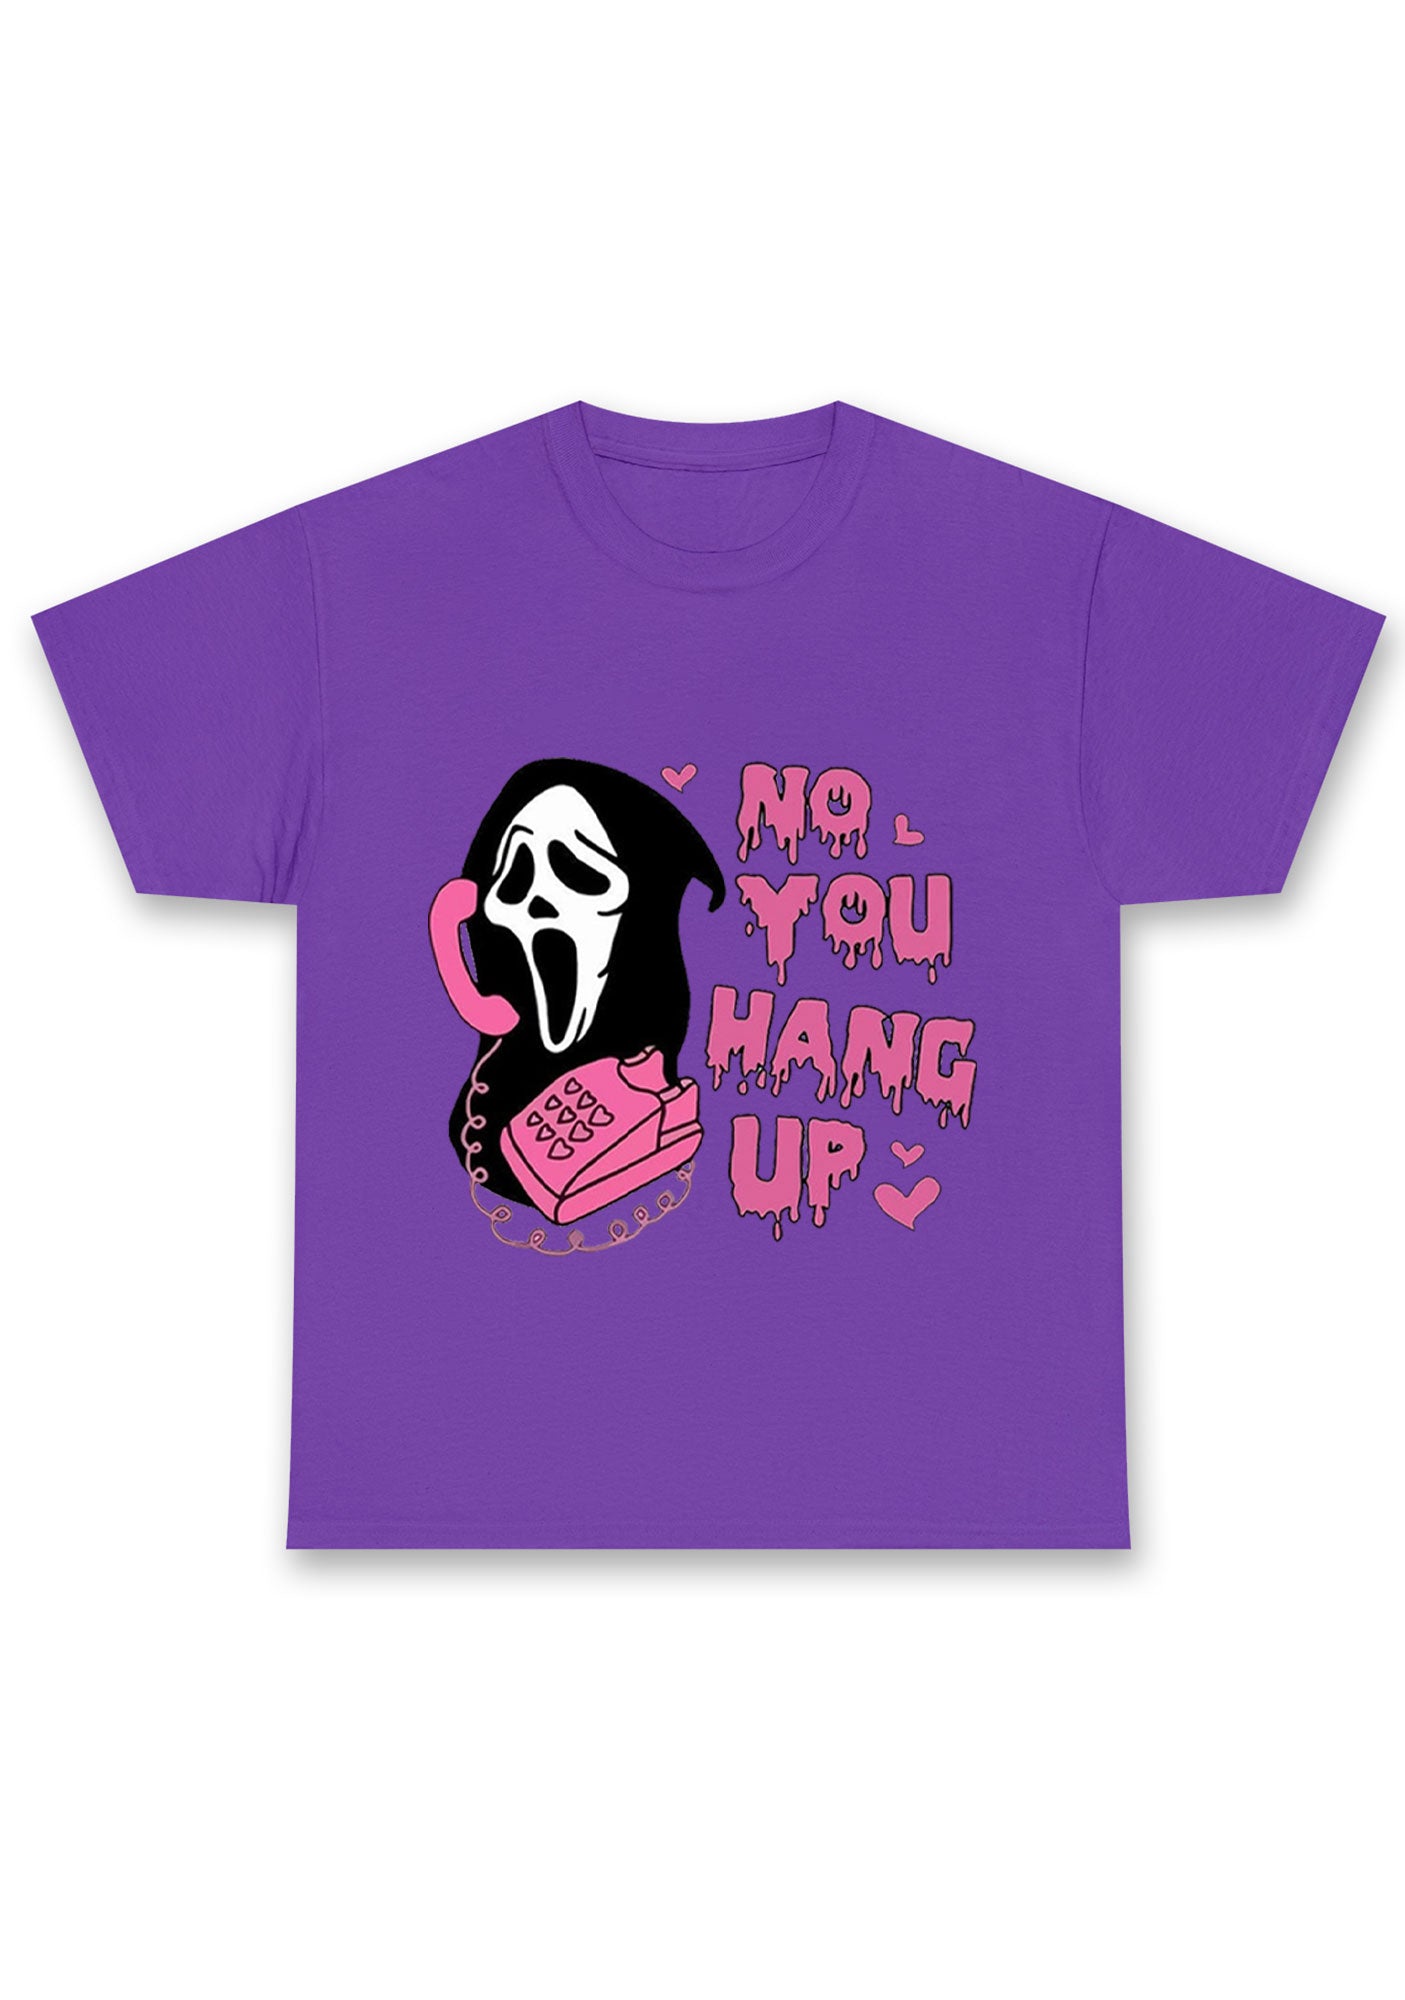 Halloween No You Hang Up Chunky Shirt